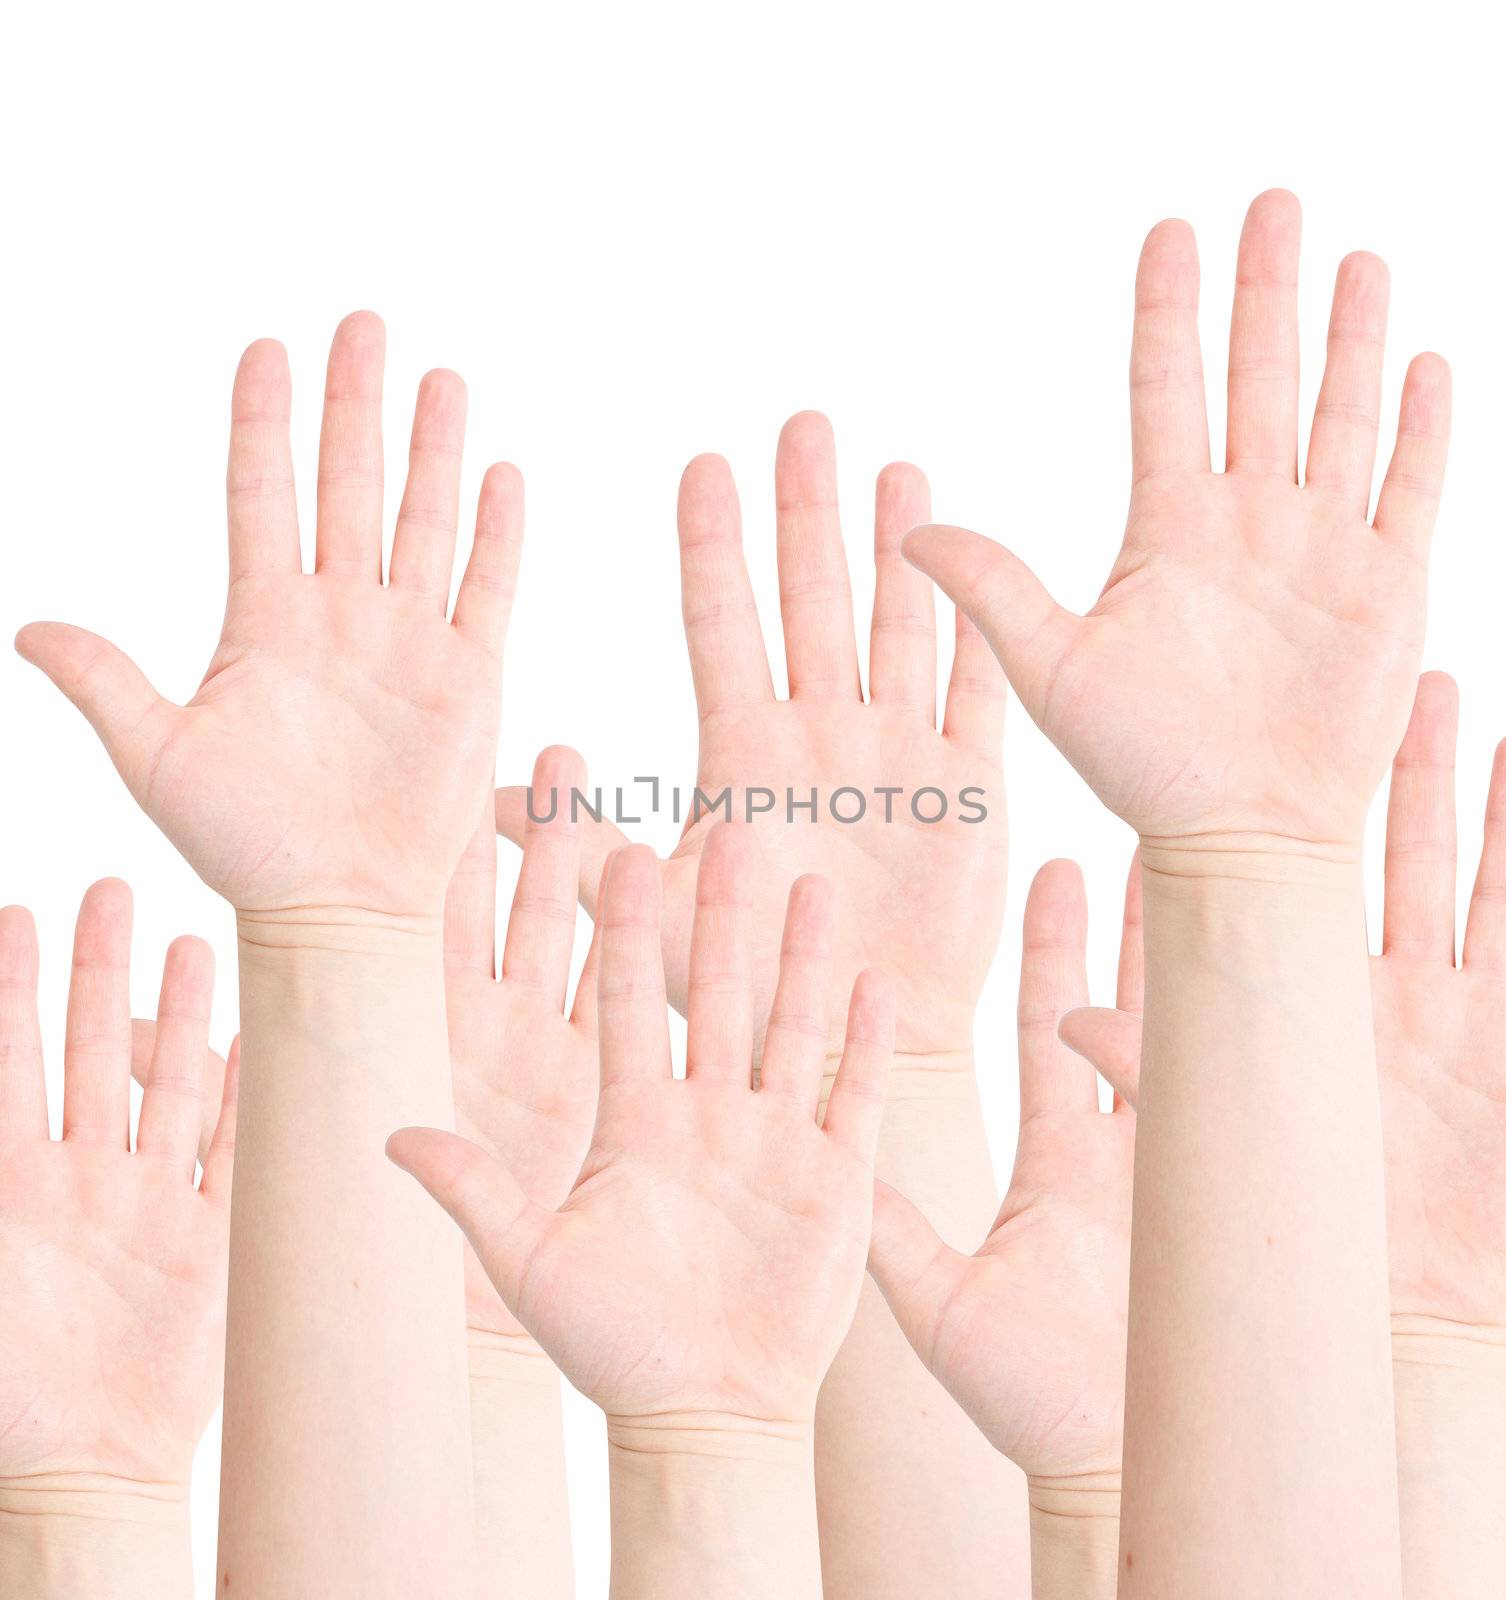 Raised hands by leeser